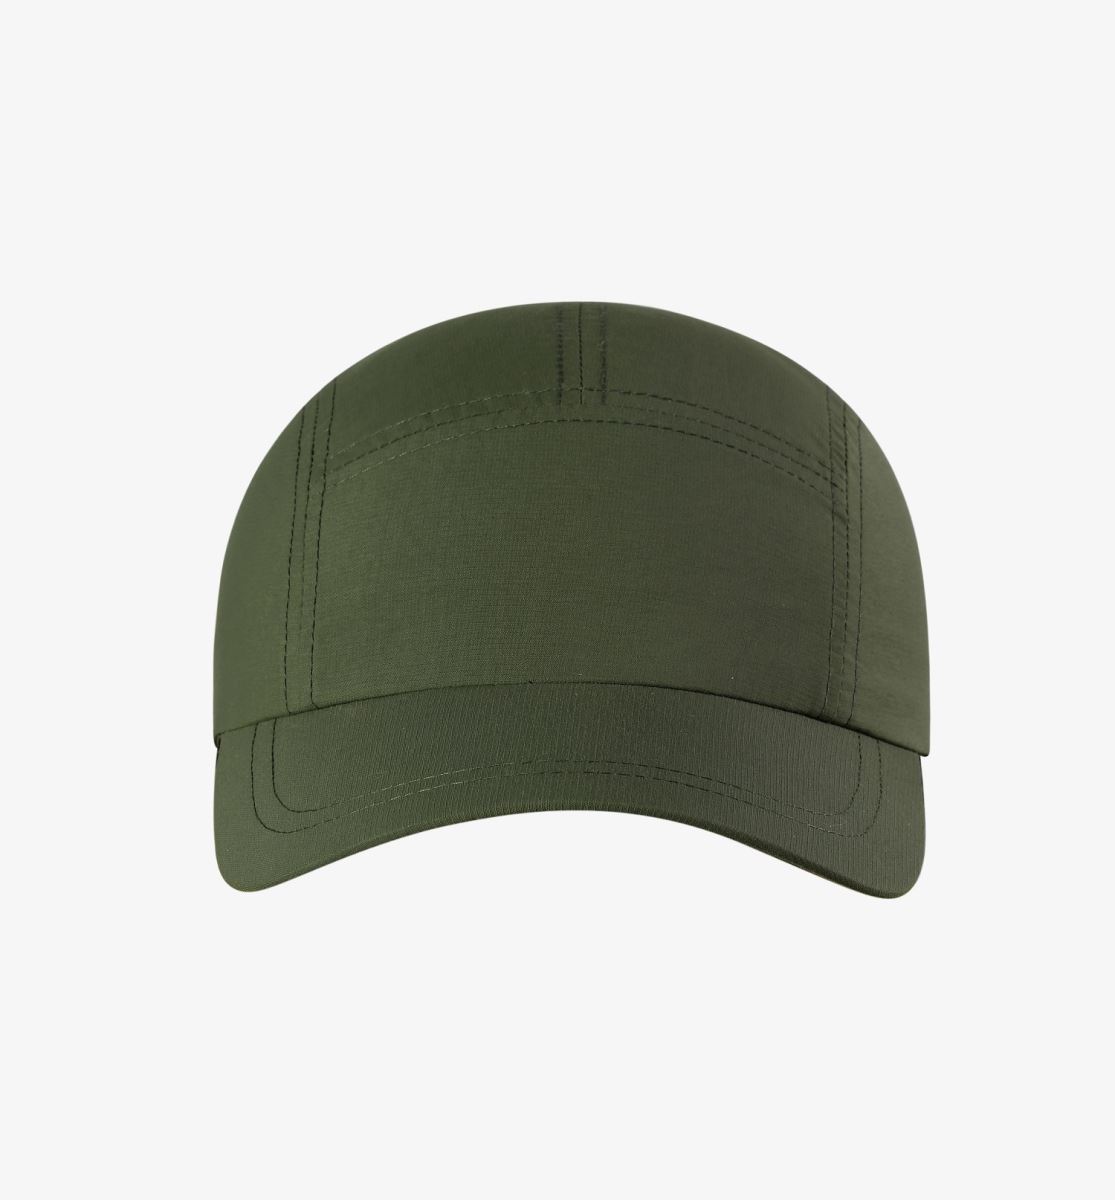 ,帽子厂家纯色光板运动帽